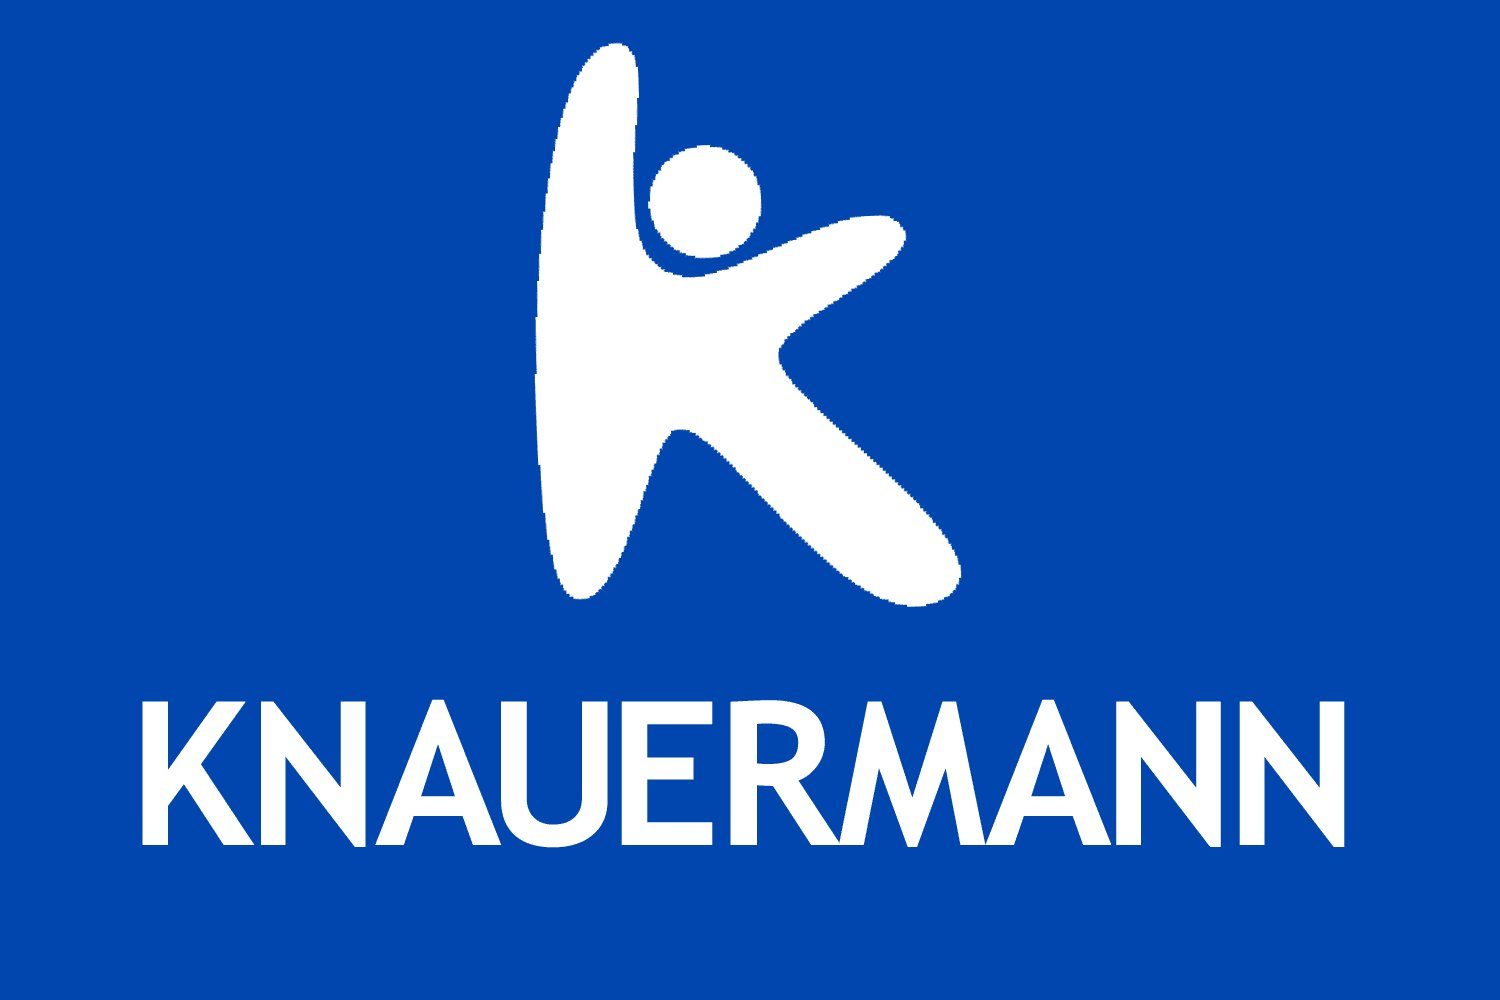 Knauermann